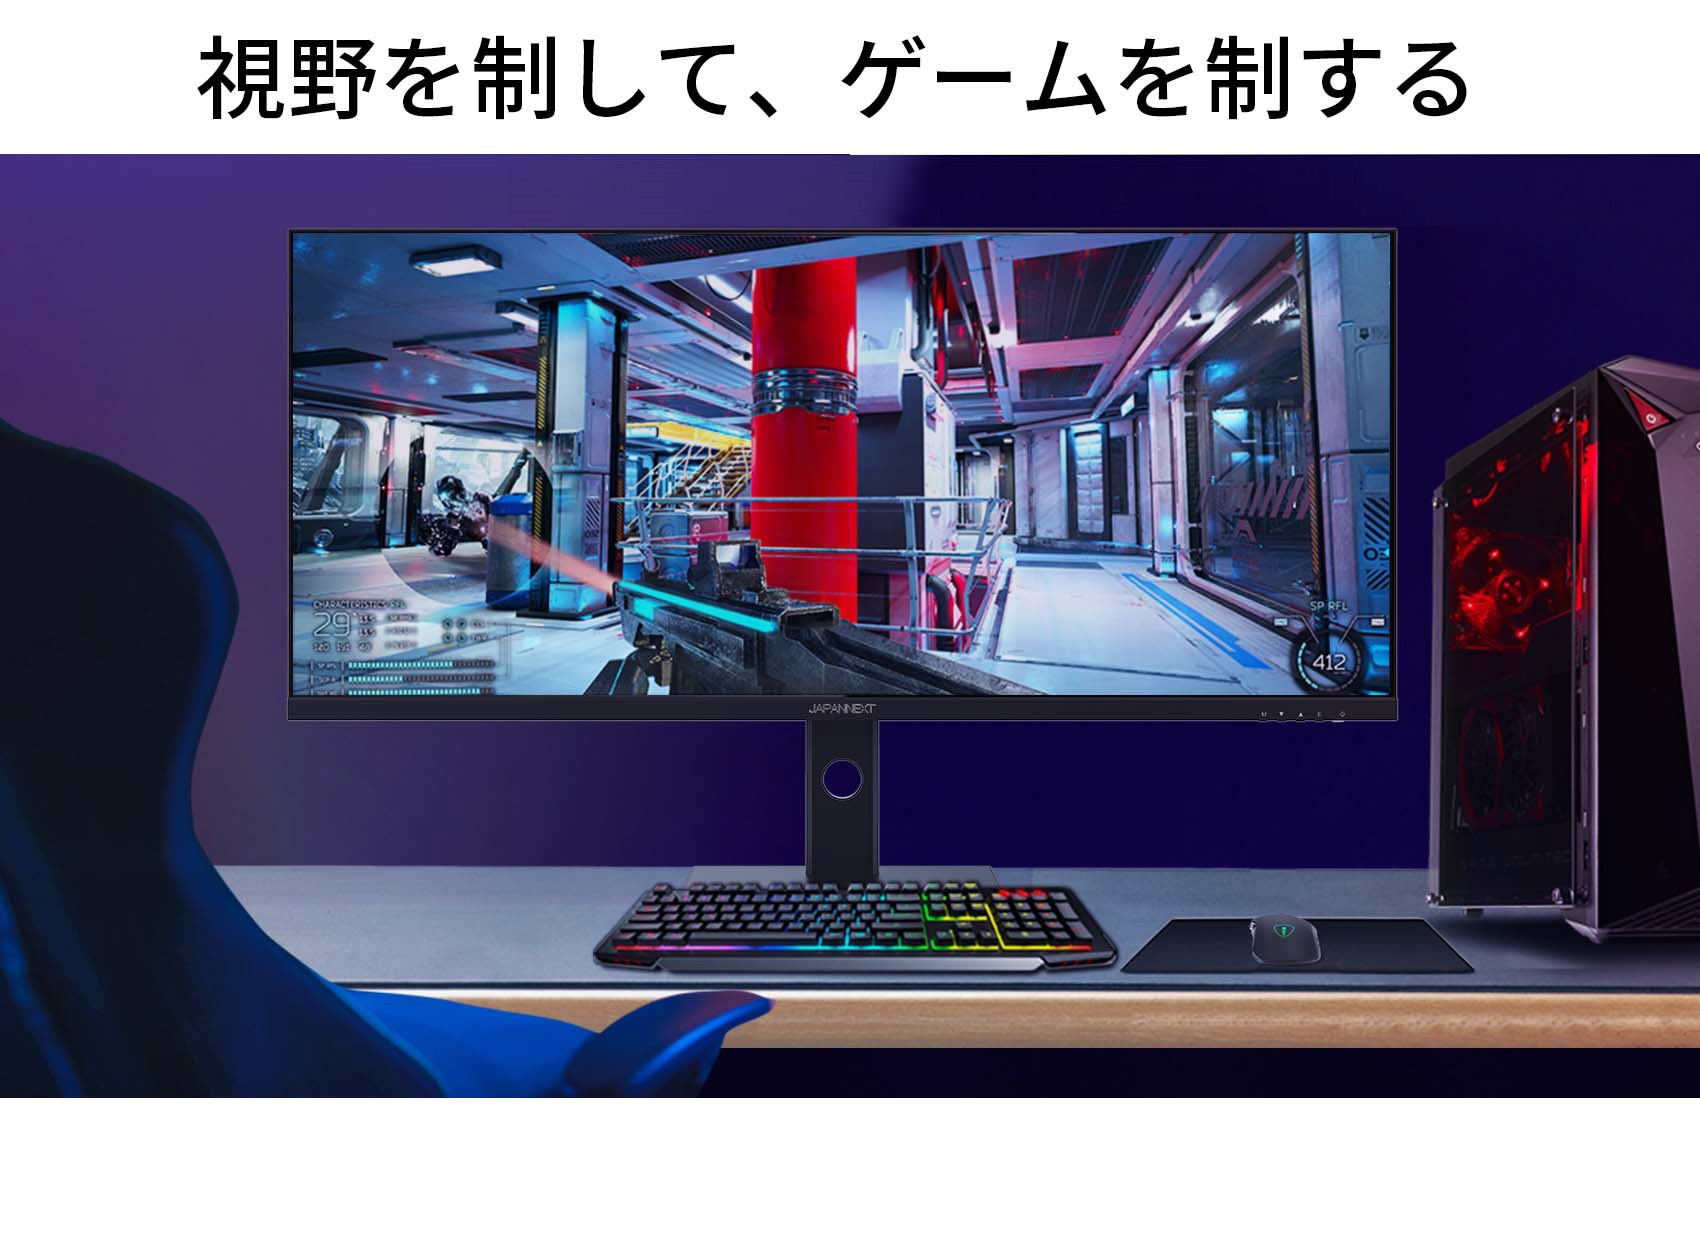 JAPANNEXT ゲーミングモニター 40インチ IPSパネル UWQHD ウルトラワイド 144Hz PC ゲーム HDMI DP USB  JN-IPS40UWQHDR144 ワイドモニター ジャパンネクスト